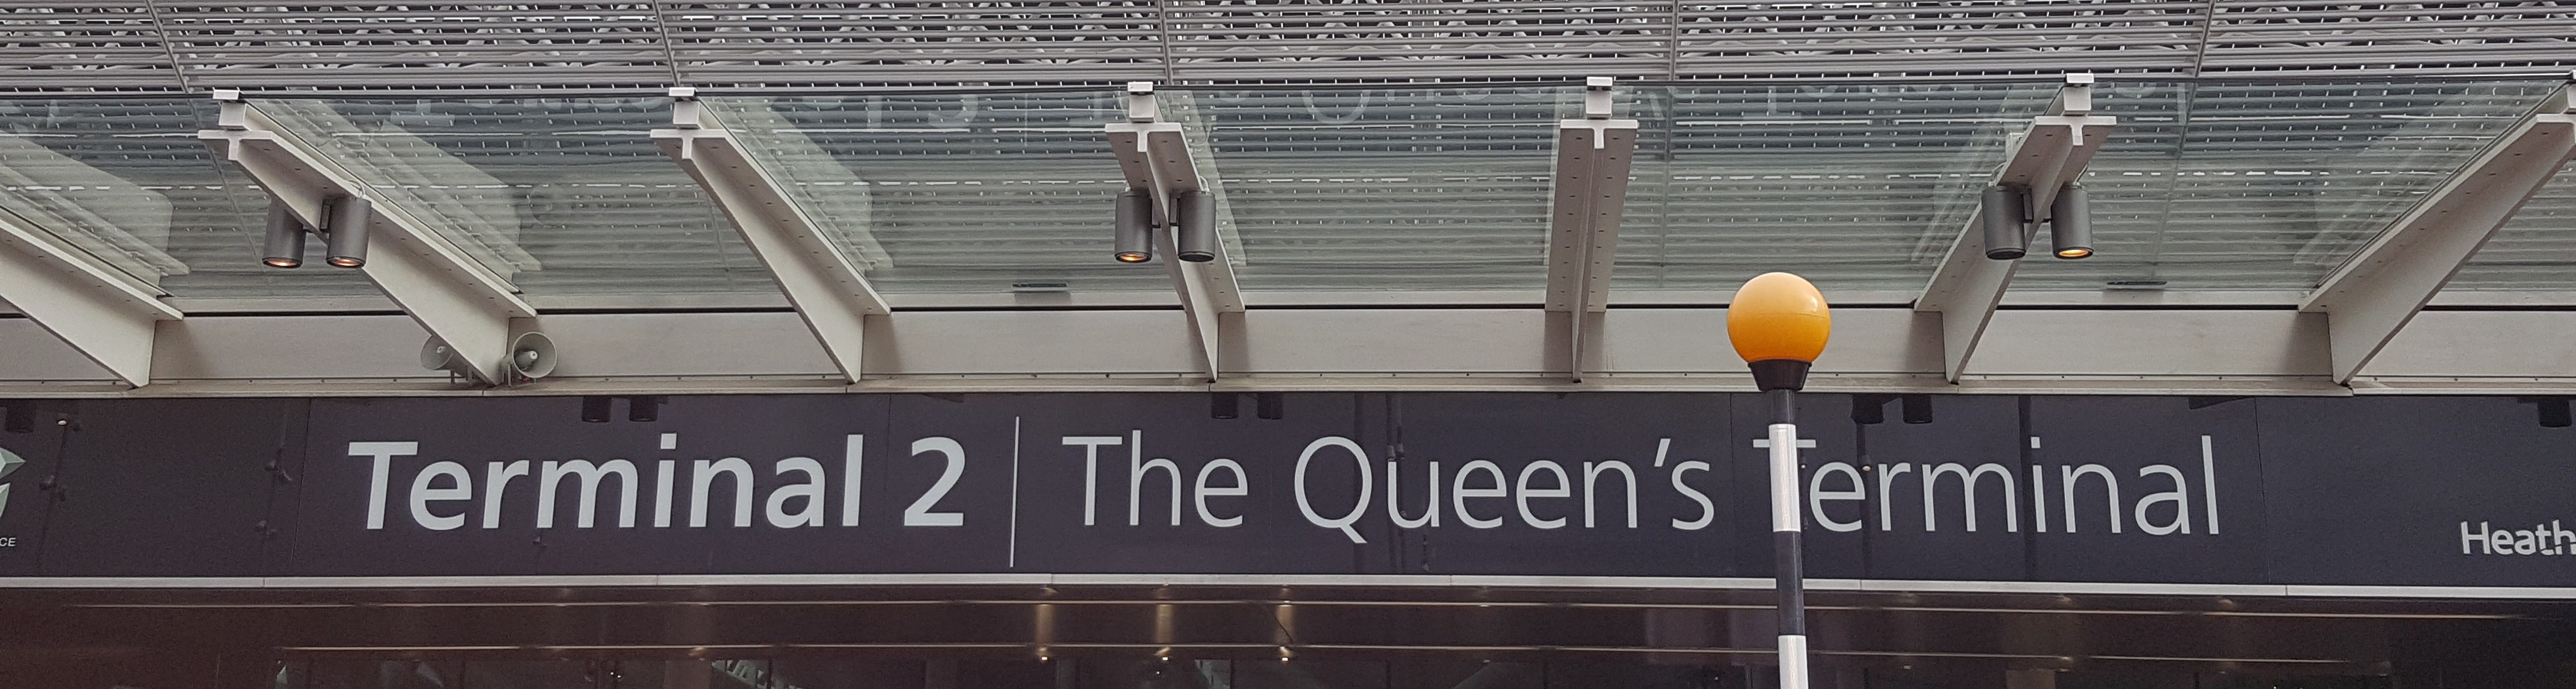 The Queen's Terminal.